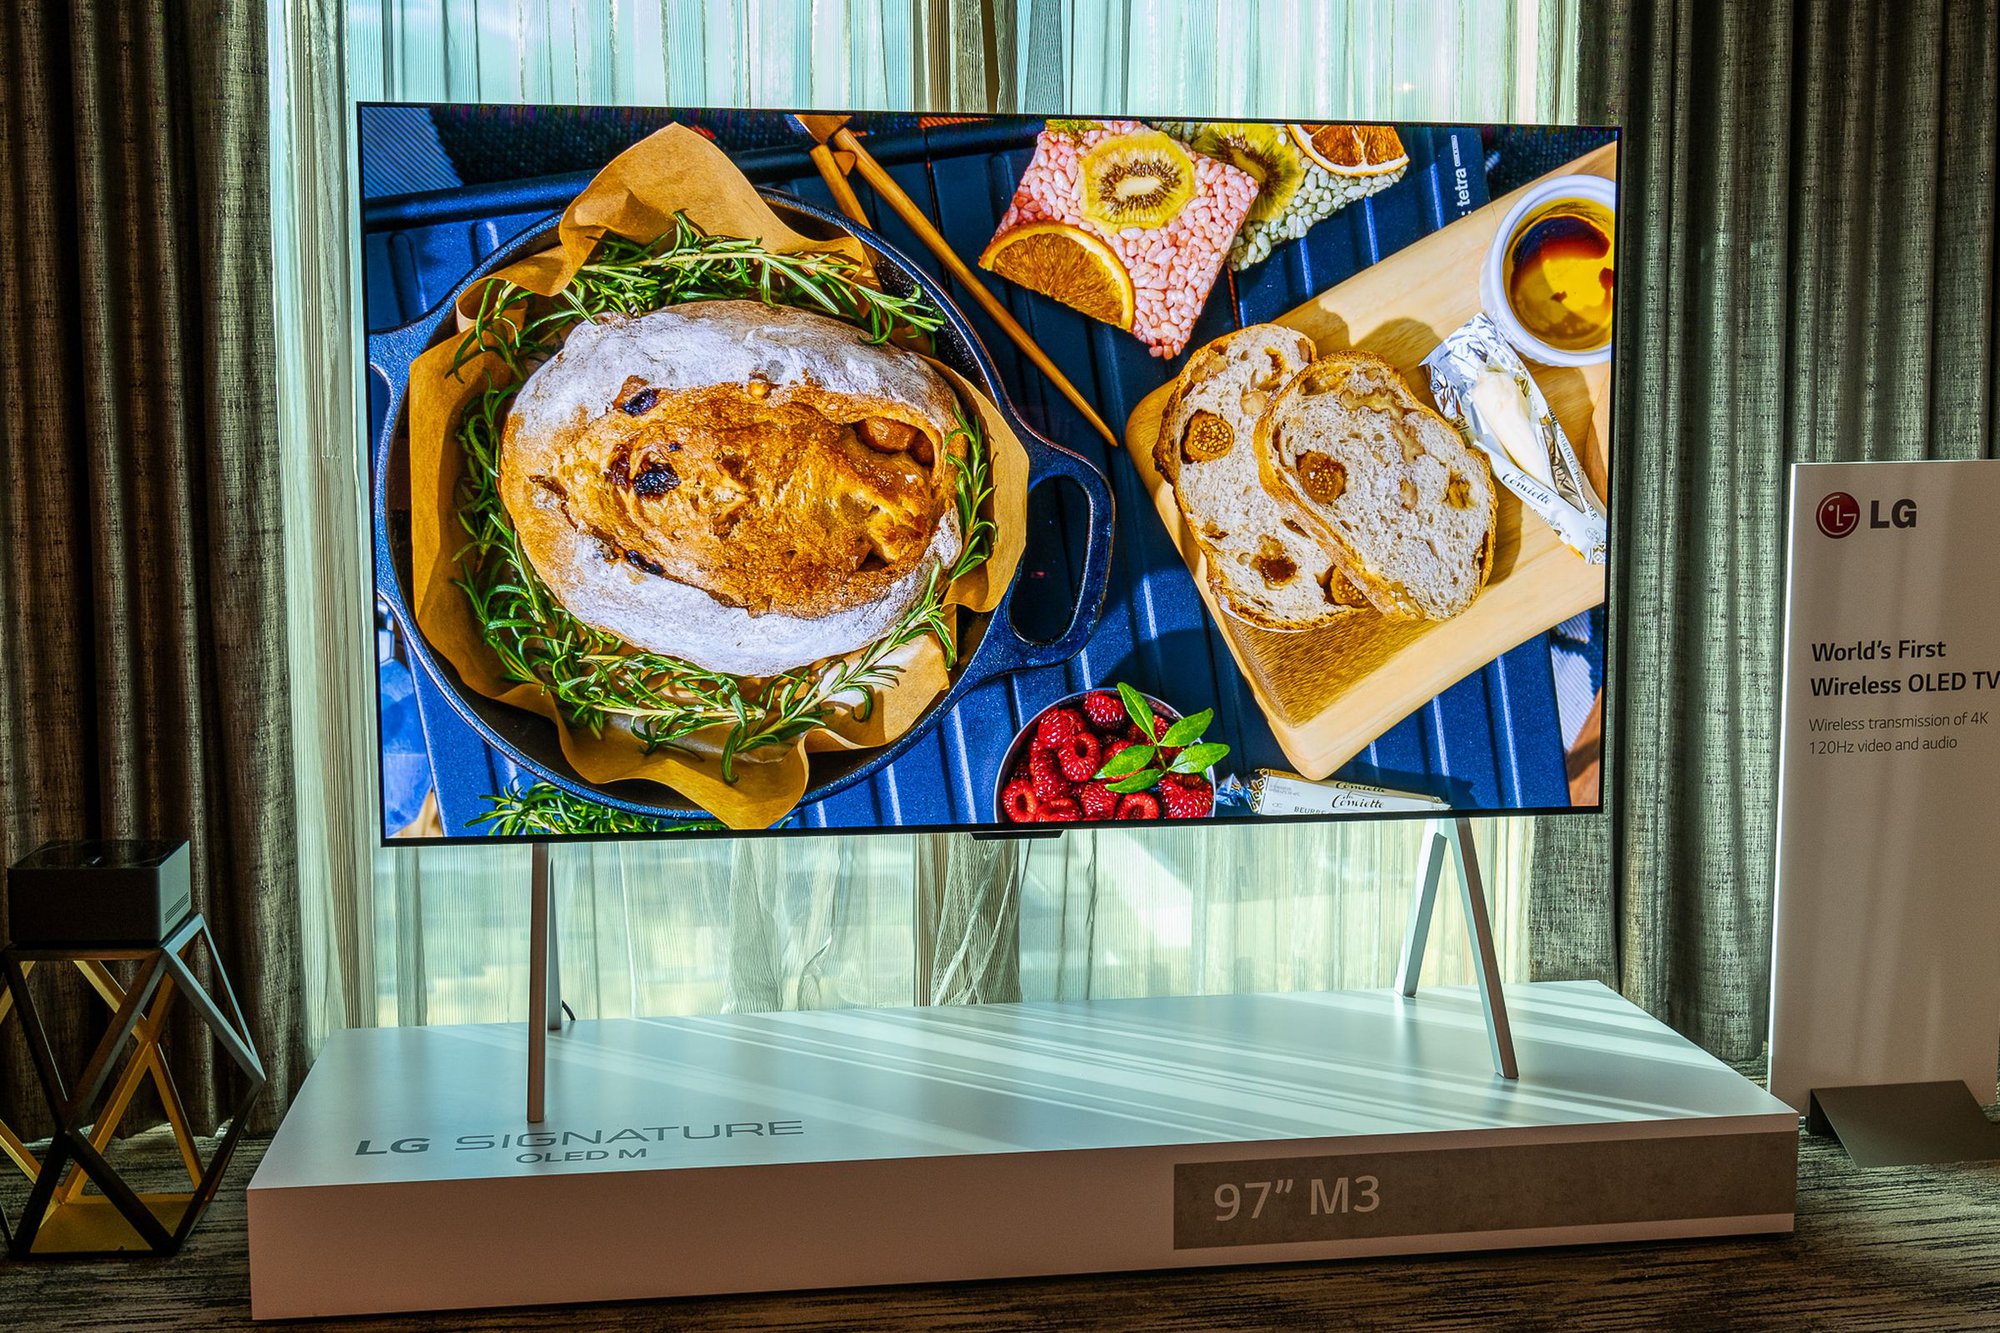 LG ra mắt chiếc TV OLED không dây đầu tiên trên thế giới   - Ảnh 1.